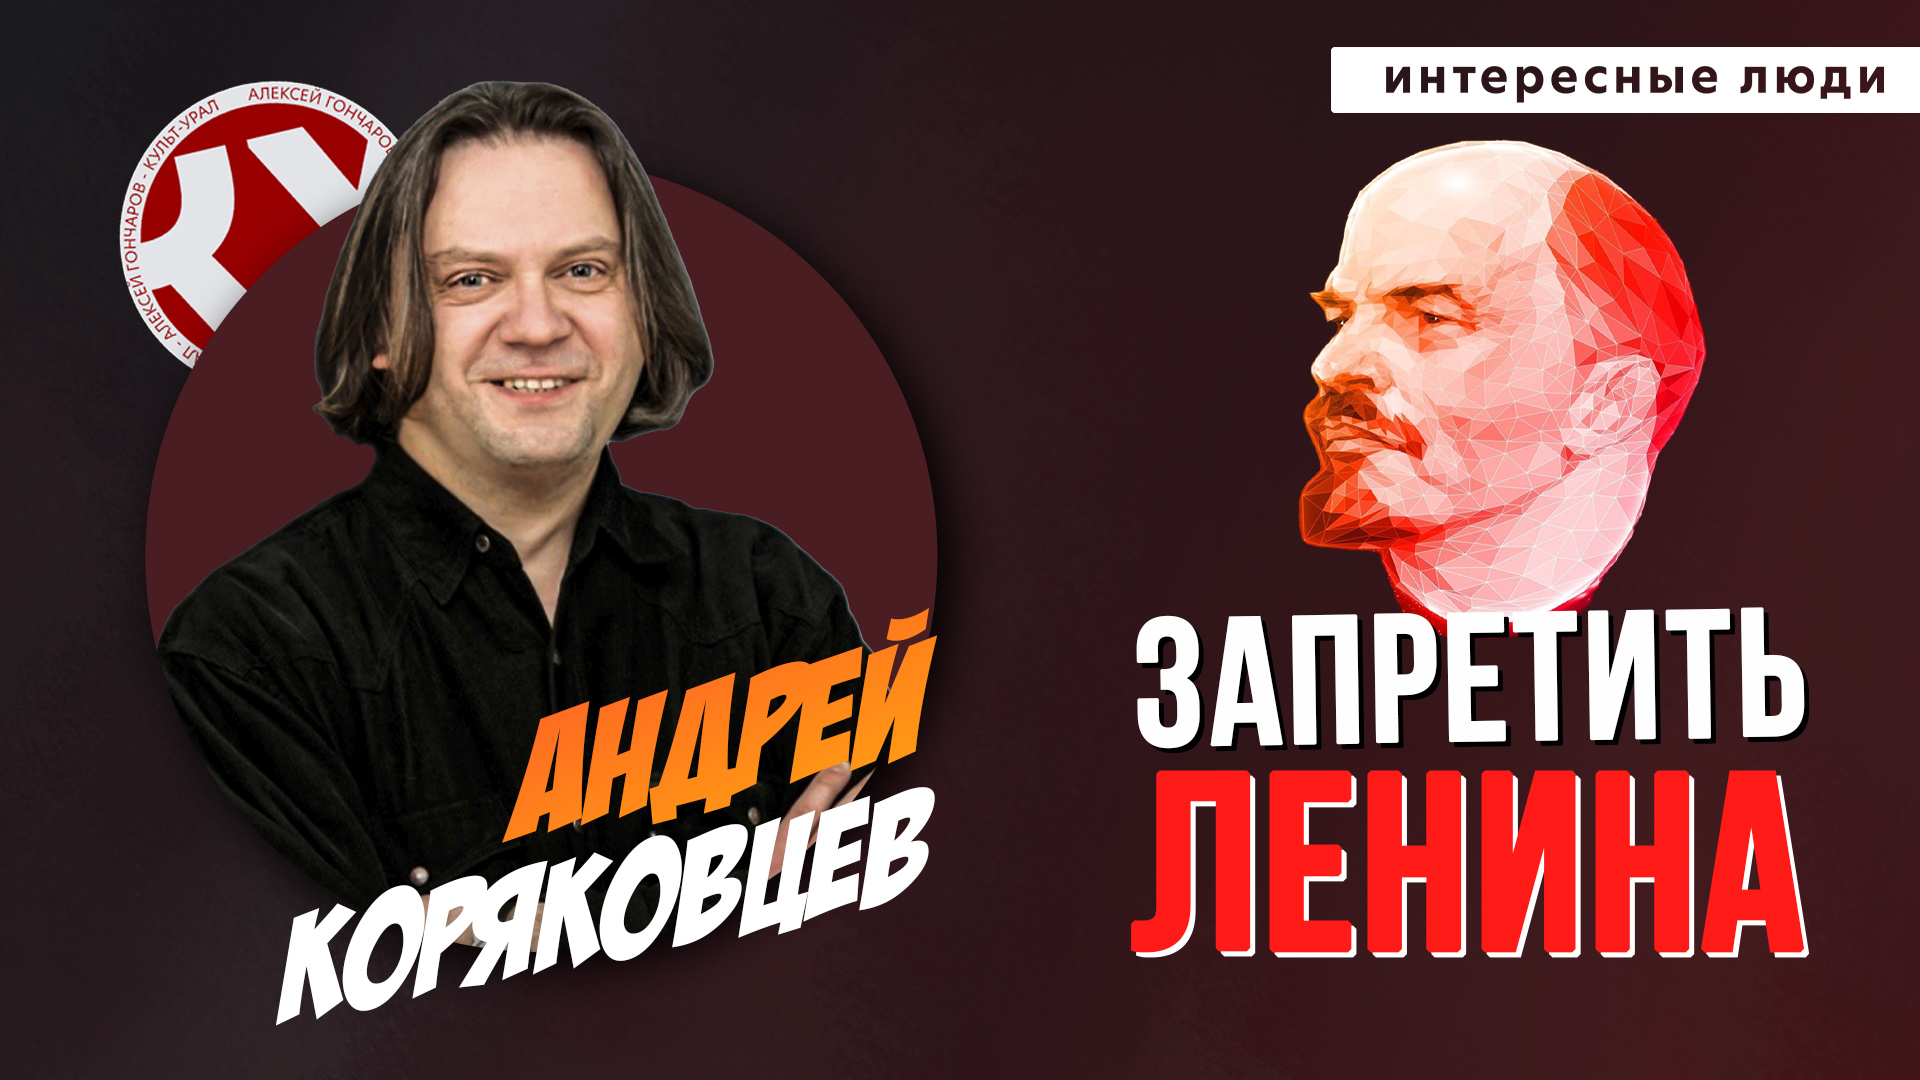 Запретить  Ленина! | Андрей КОРЯКОВЦЕВ | ИНТЕРЕСНЫЕ ЛЮДИ